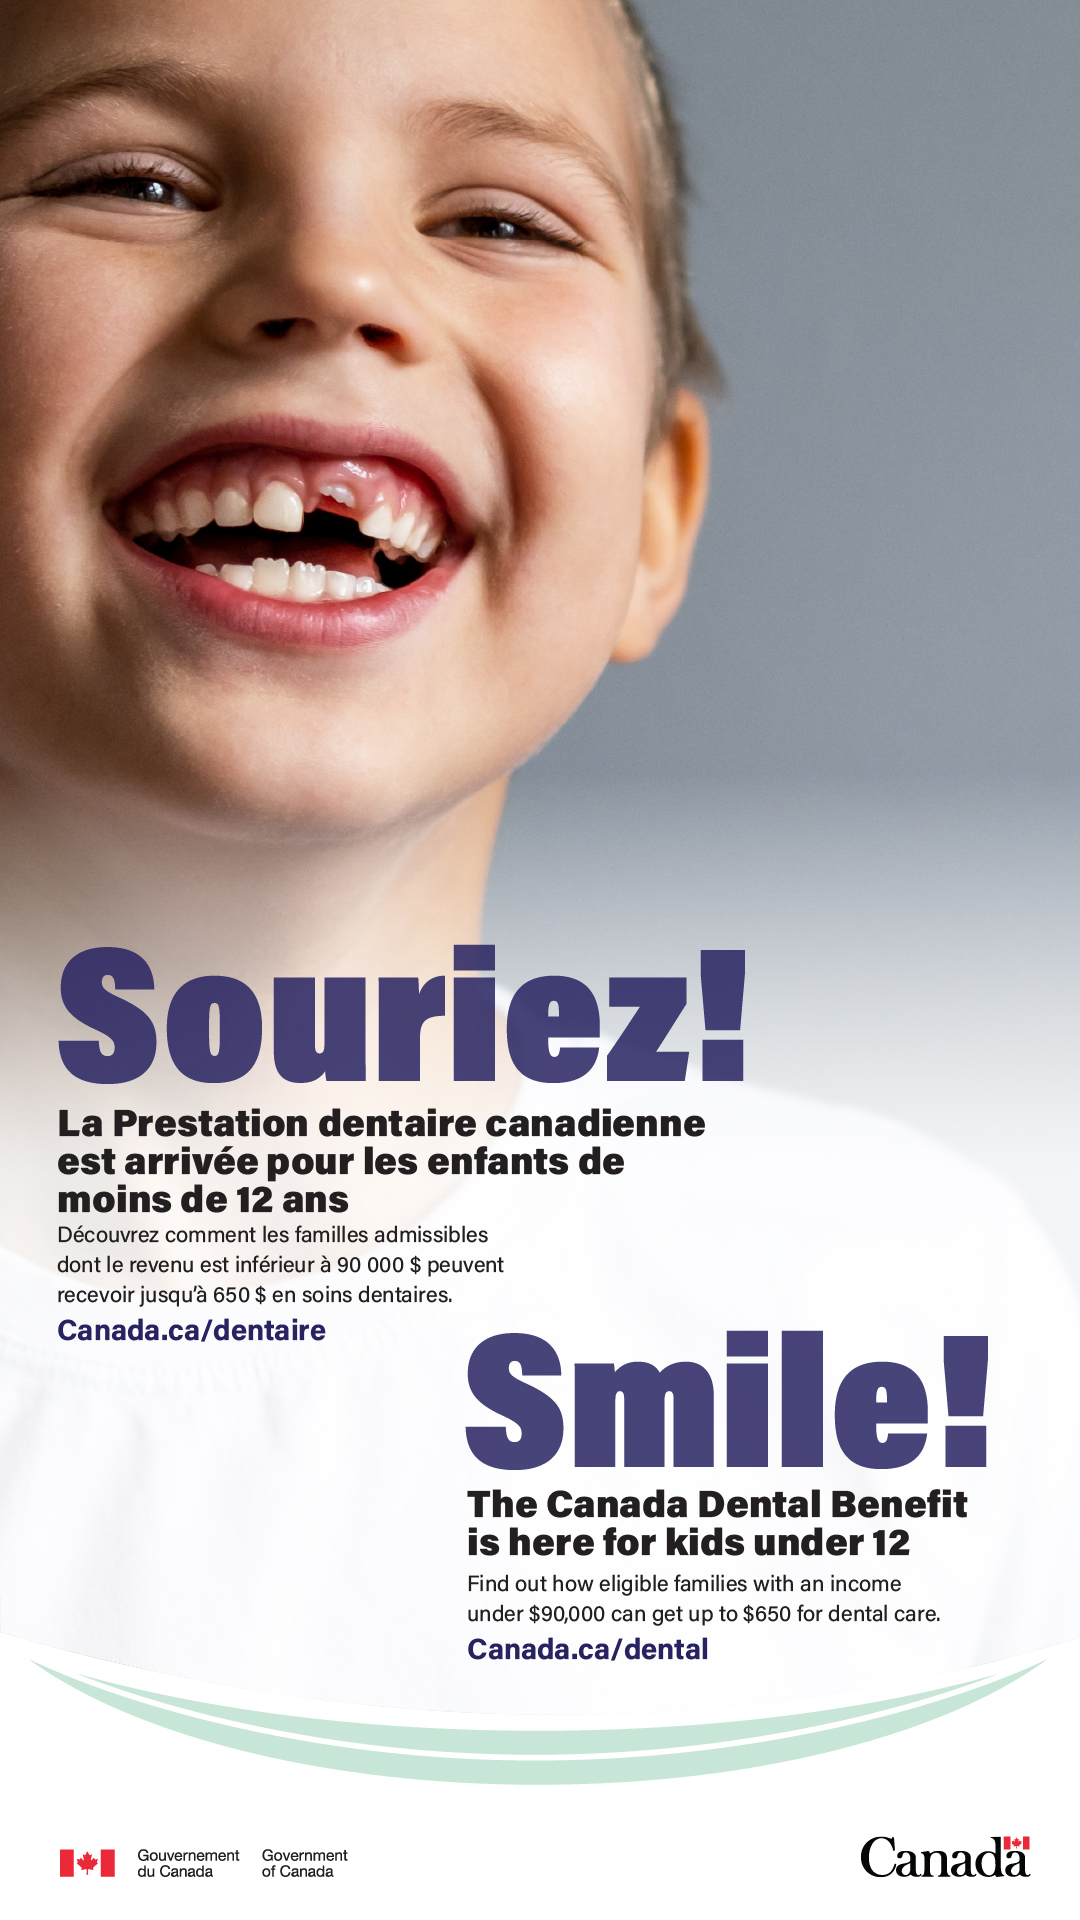 Jeune garçon souriant sur une affiche promotionnelle de la prestation dentaire canadienne.